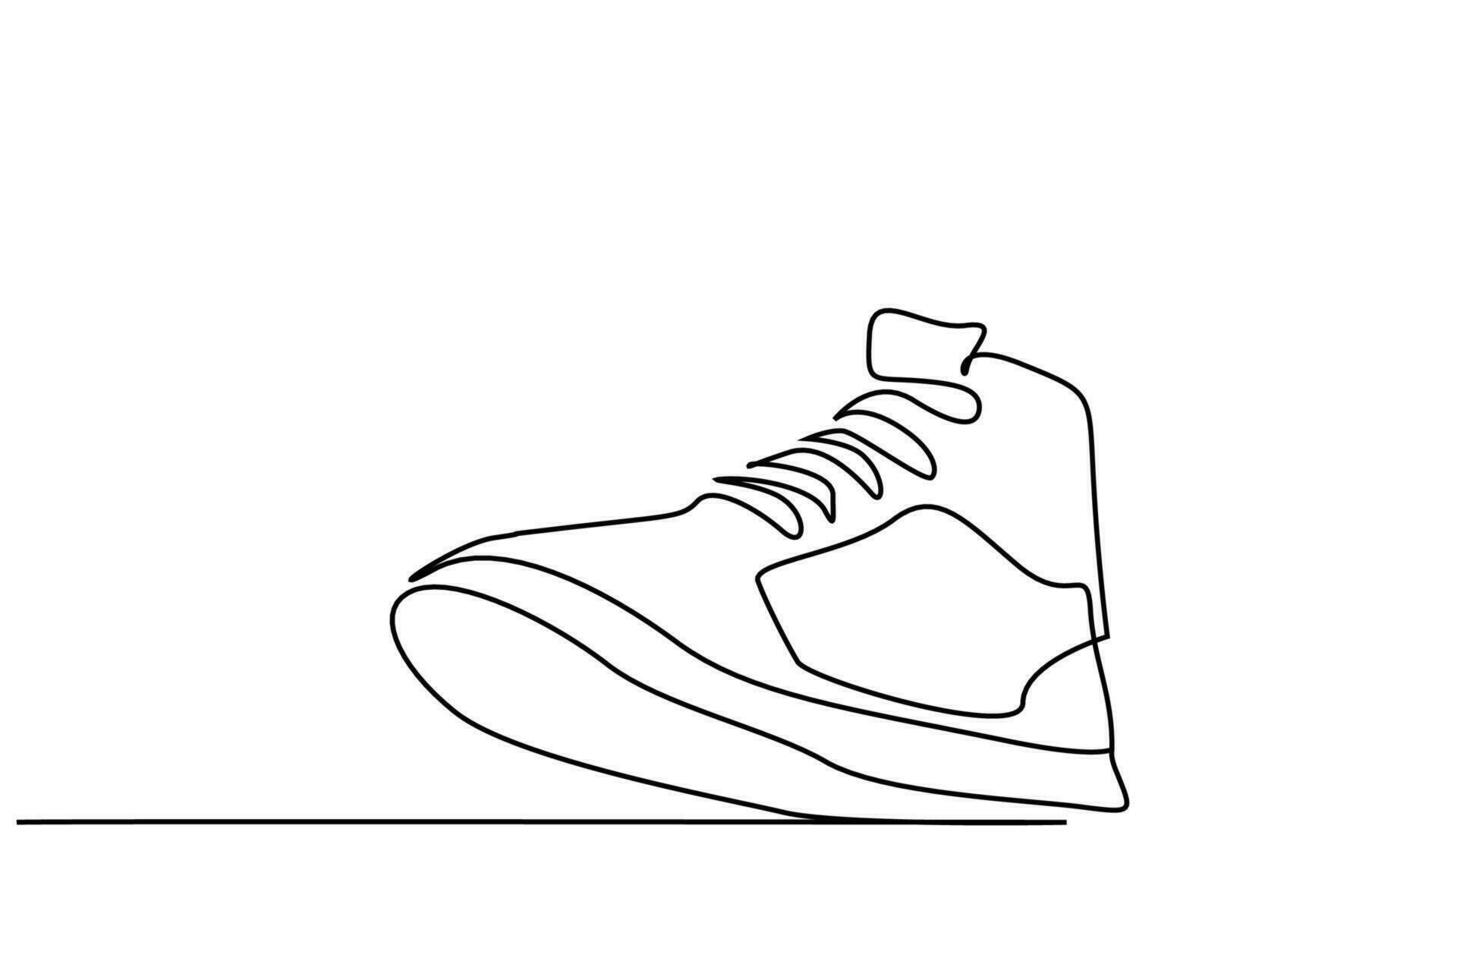 nuevo Moda Deportes zapatillas casual Zapatos línea Arte diseño vector